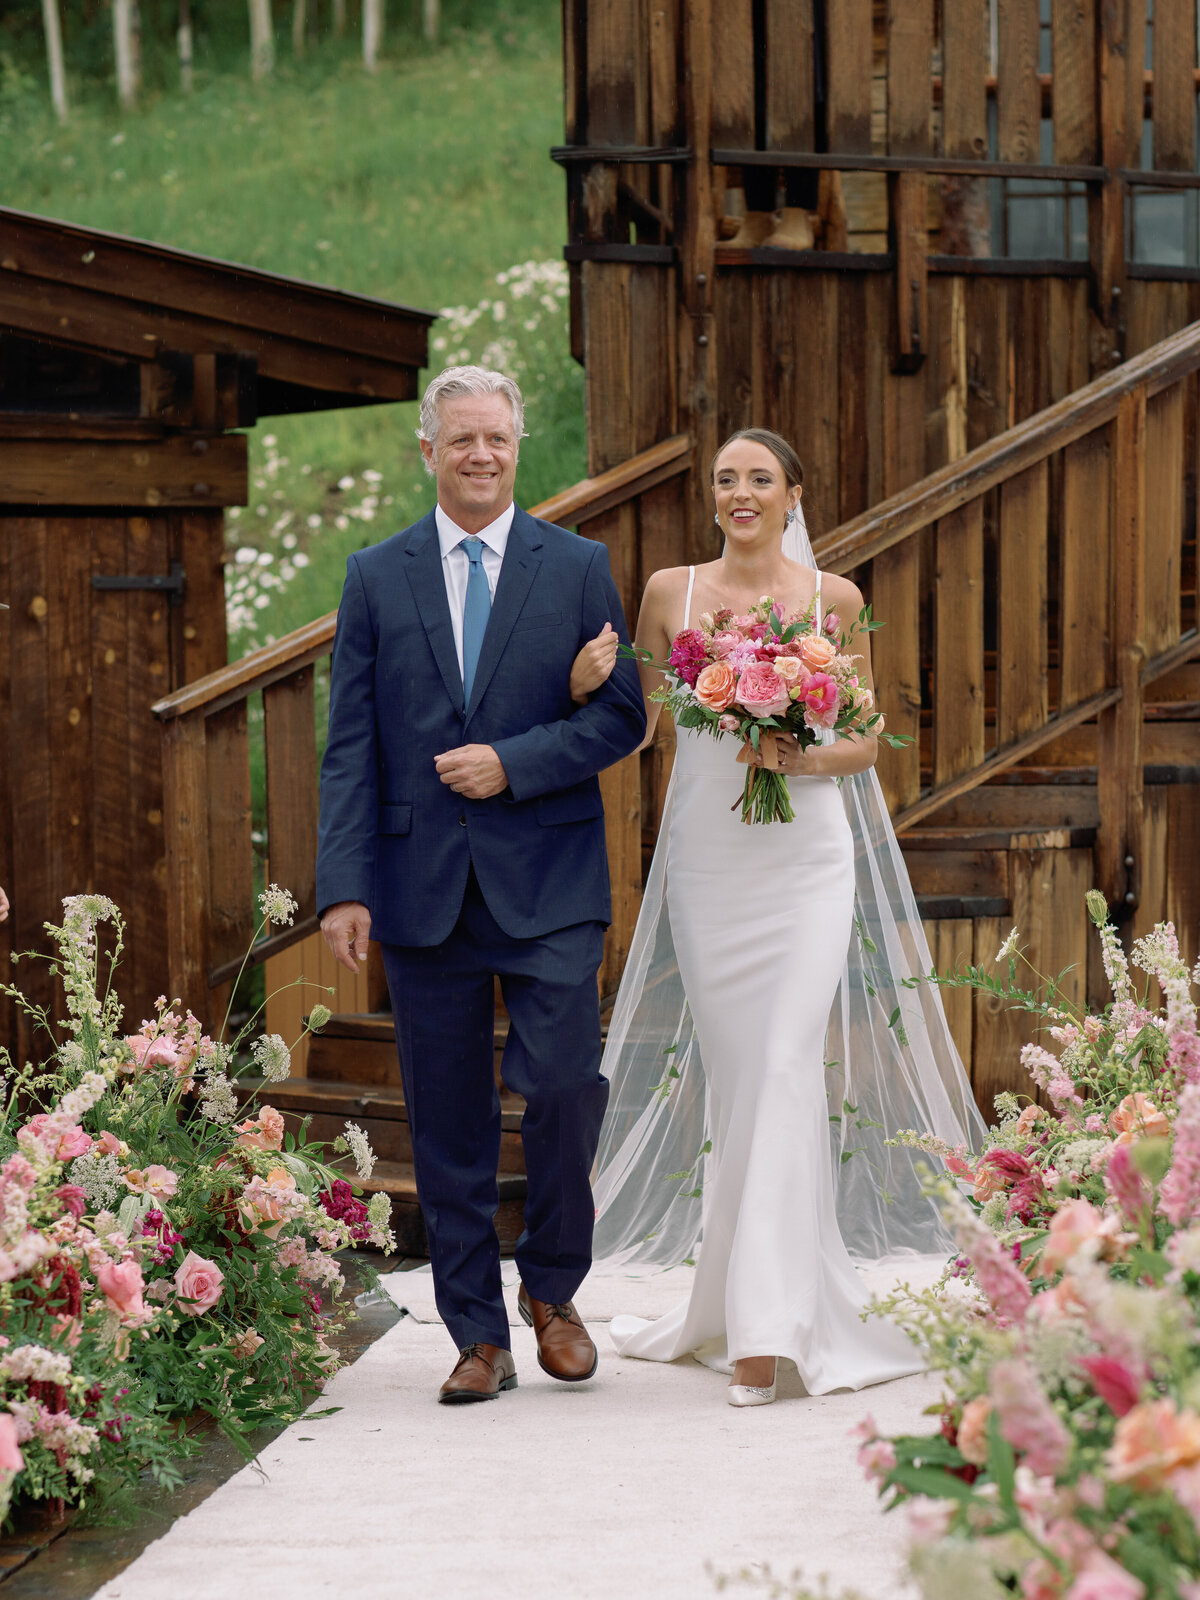 Logan & Ben - Fashion-Forward Mountaintop Wedding in Telluride, Colorado-17